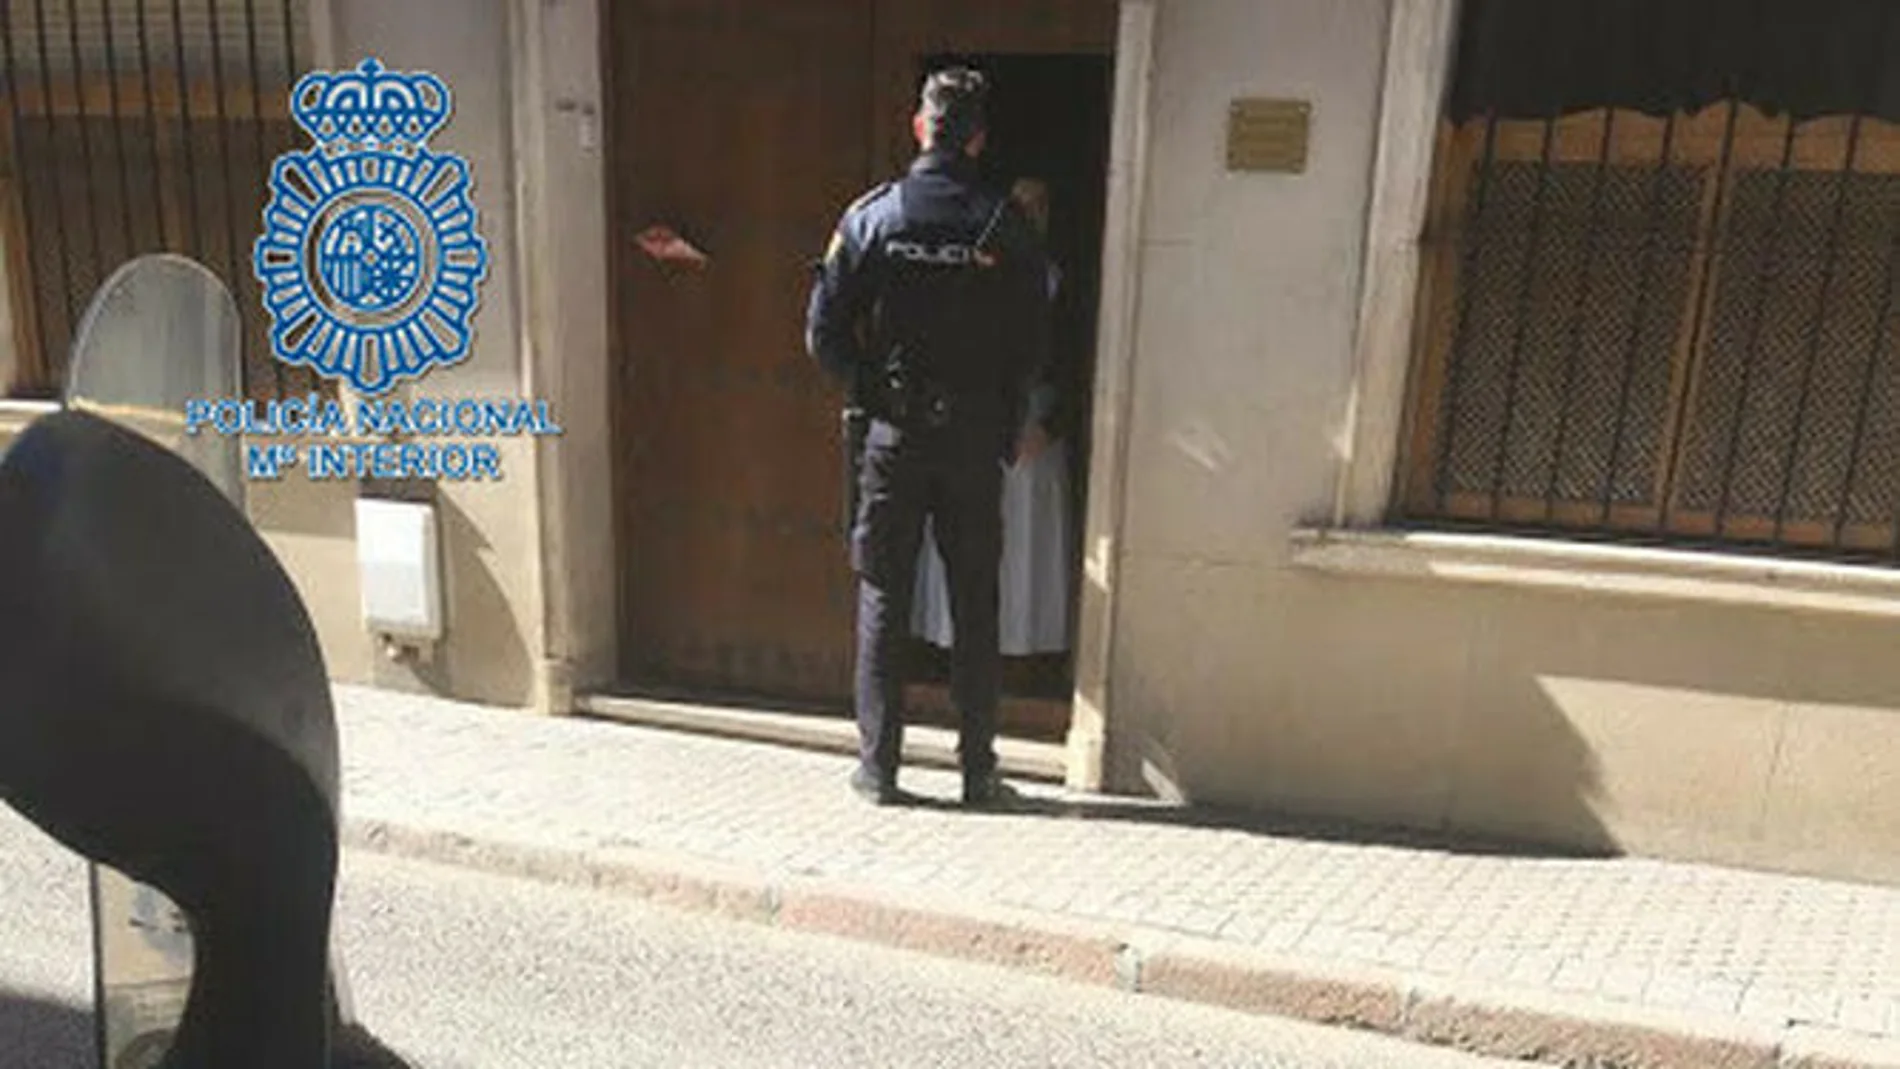 Un agente, a las puertas del Convento de Clausura.